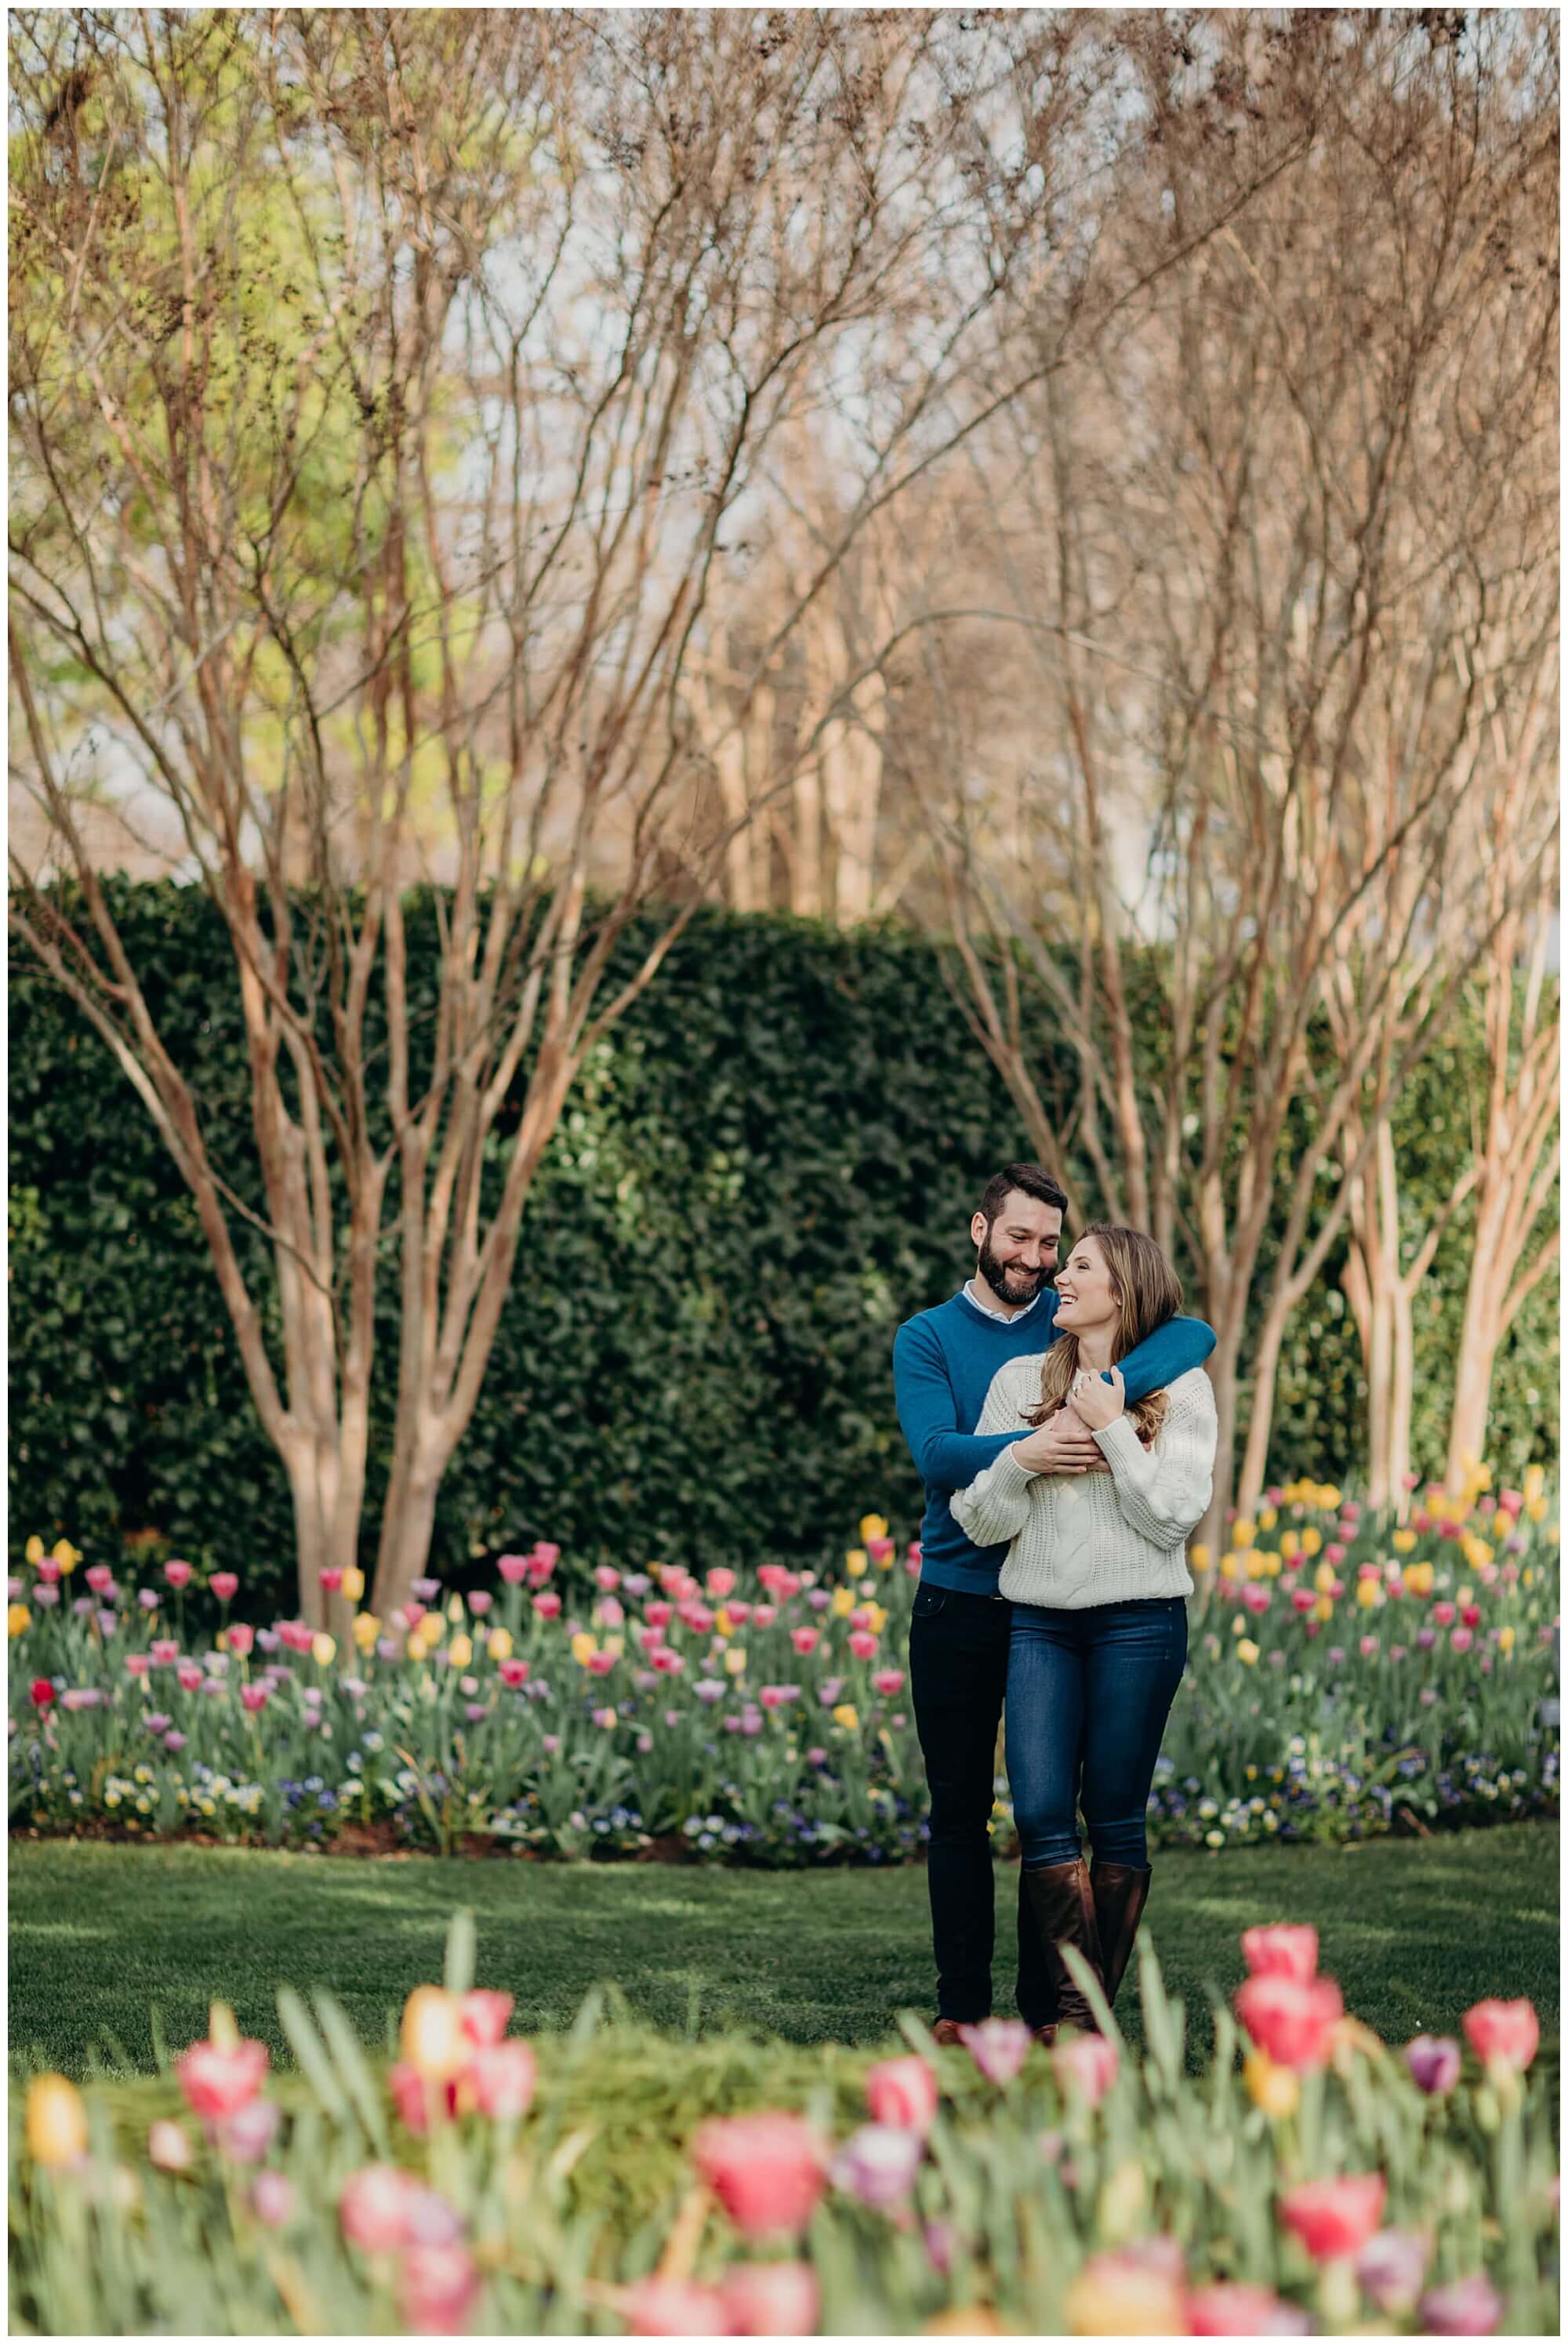 Dallas Arboretum engagement photos, dallas arboretum and botanical gardens, dallas arboretum tulips, dallas tulips, colorful engagement photos